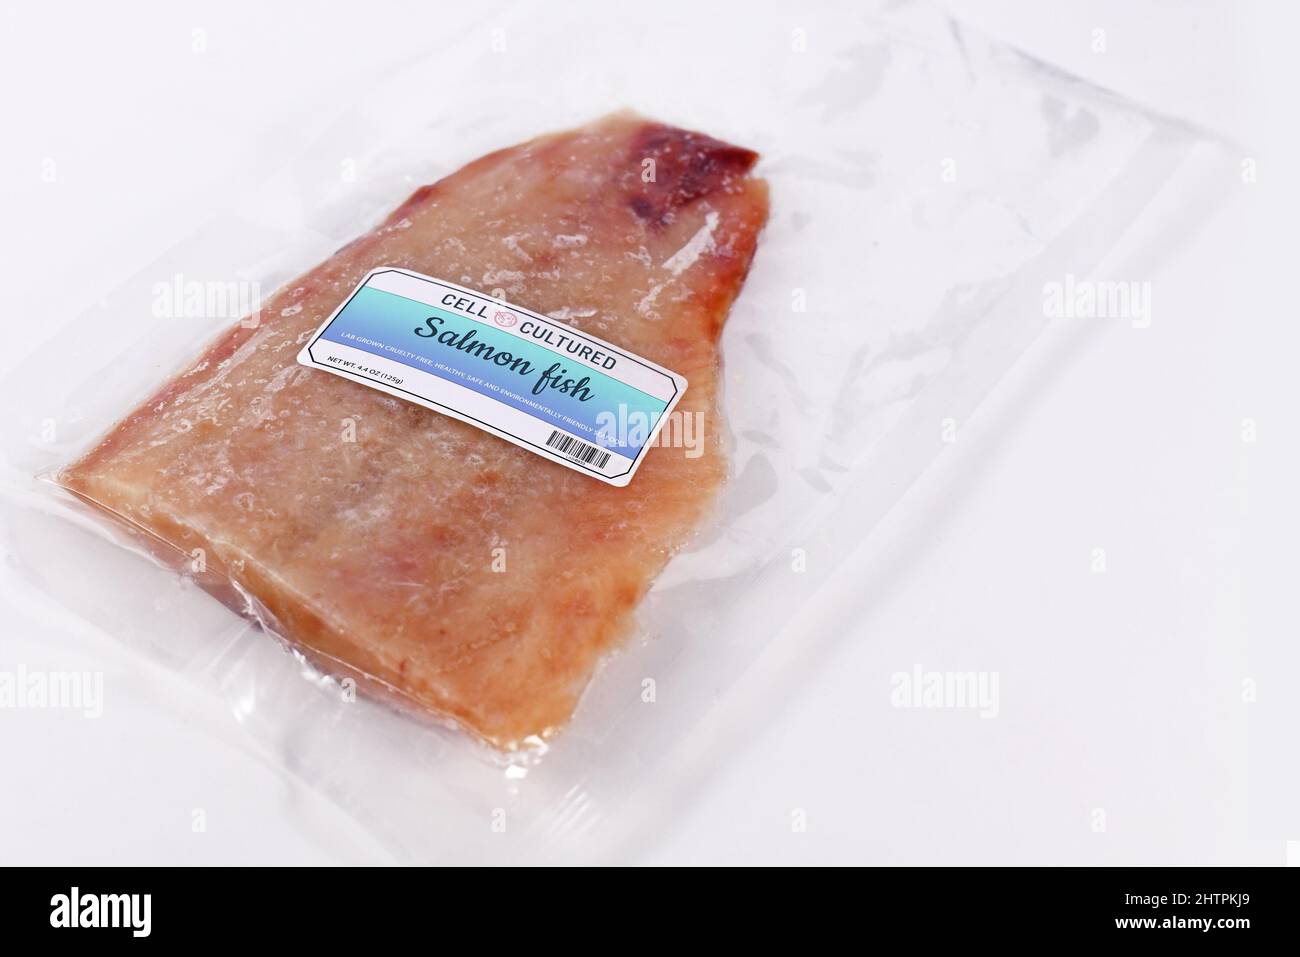 Concetto di pesce di salmone coltivato a cellule coltivate in laboratorio per la produzione artificiale di pesce in vitro con pesce crudo congelato imballato con etichetta composta Foto Stock